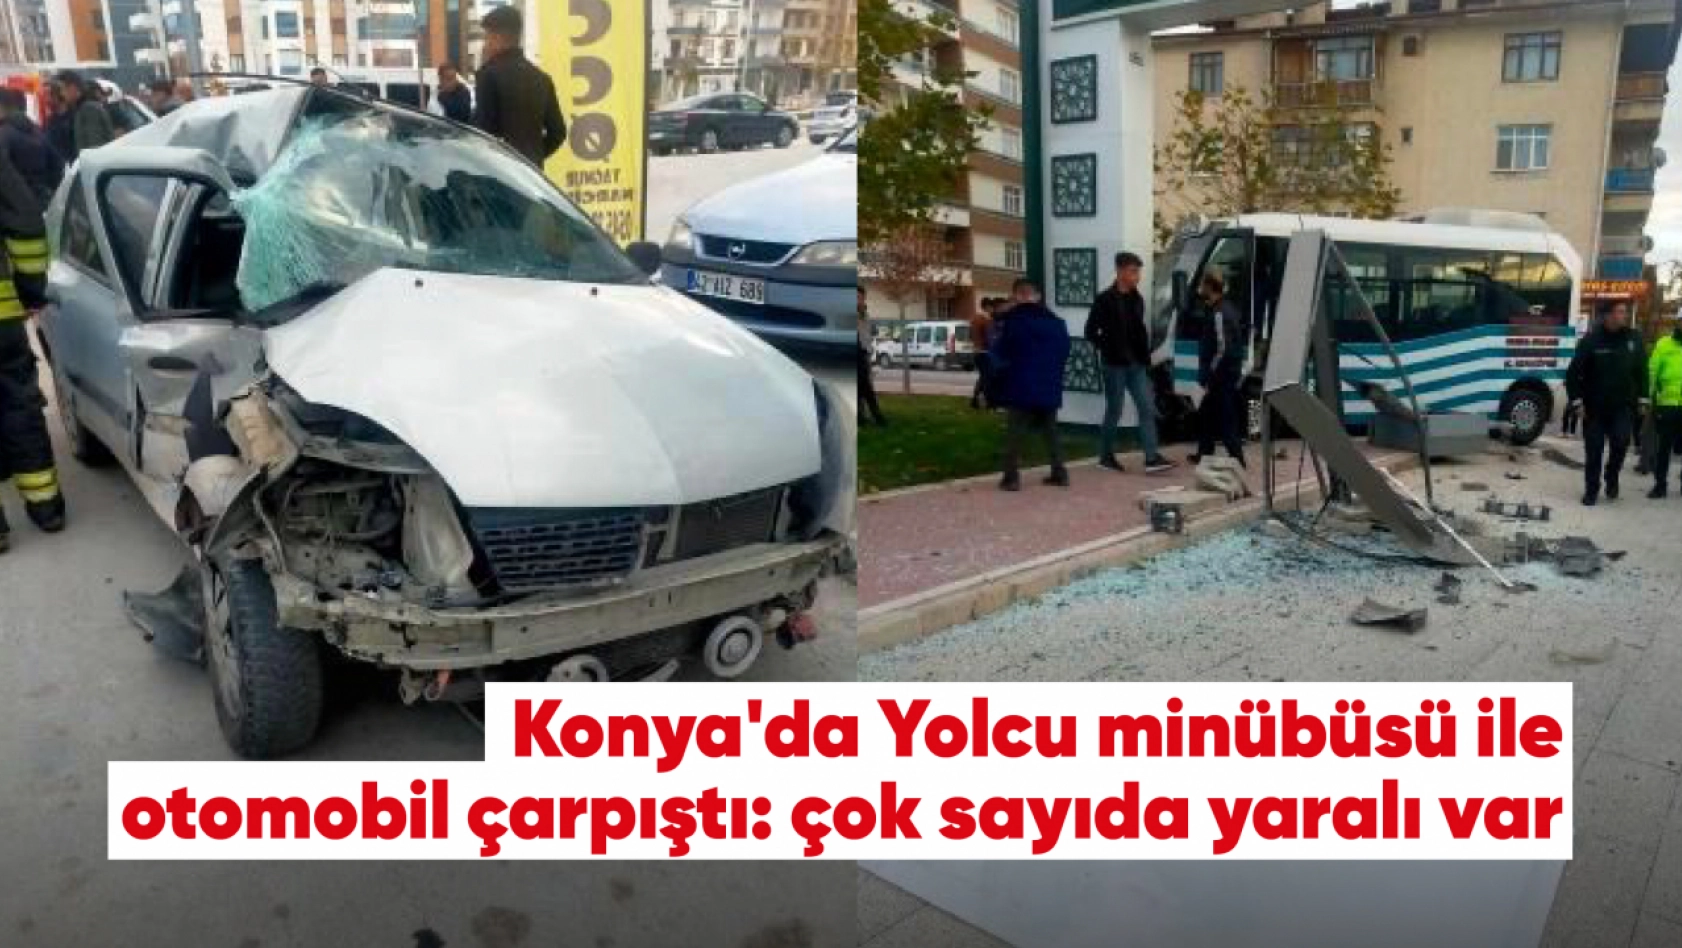 Son dakika Konya'da yolcu minibüsü ile otomobil çarpıştı! Yaralılar var!